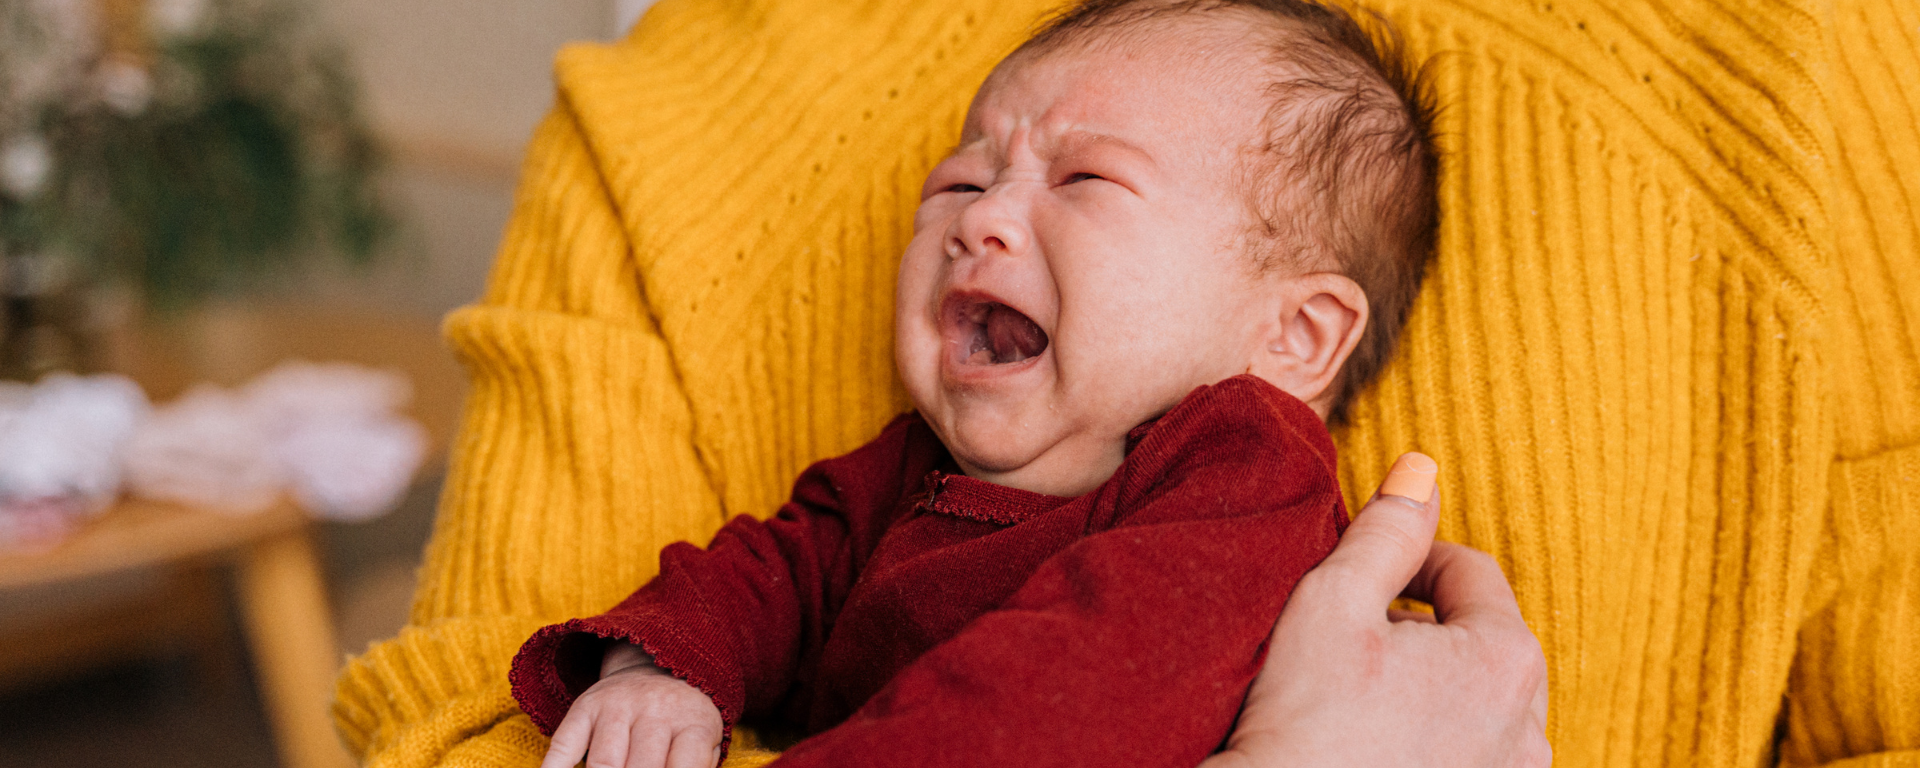 Opas itkuisten vauvojen vanhemmille - Itkuista vauvaa voi auttaa |  Hyvä